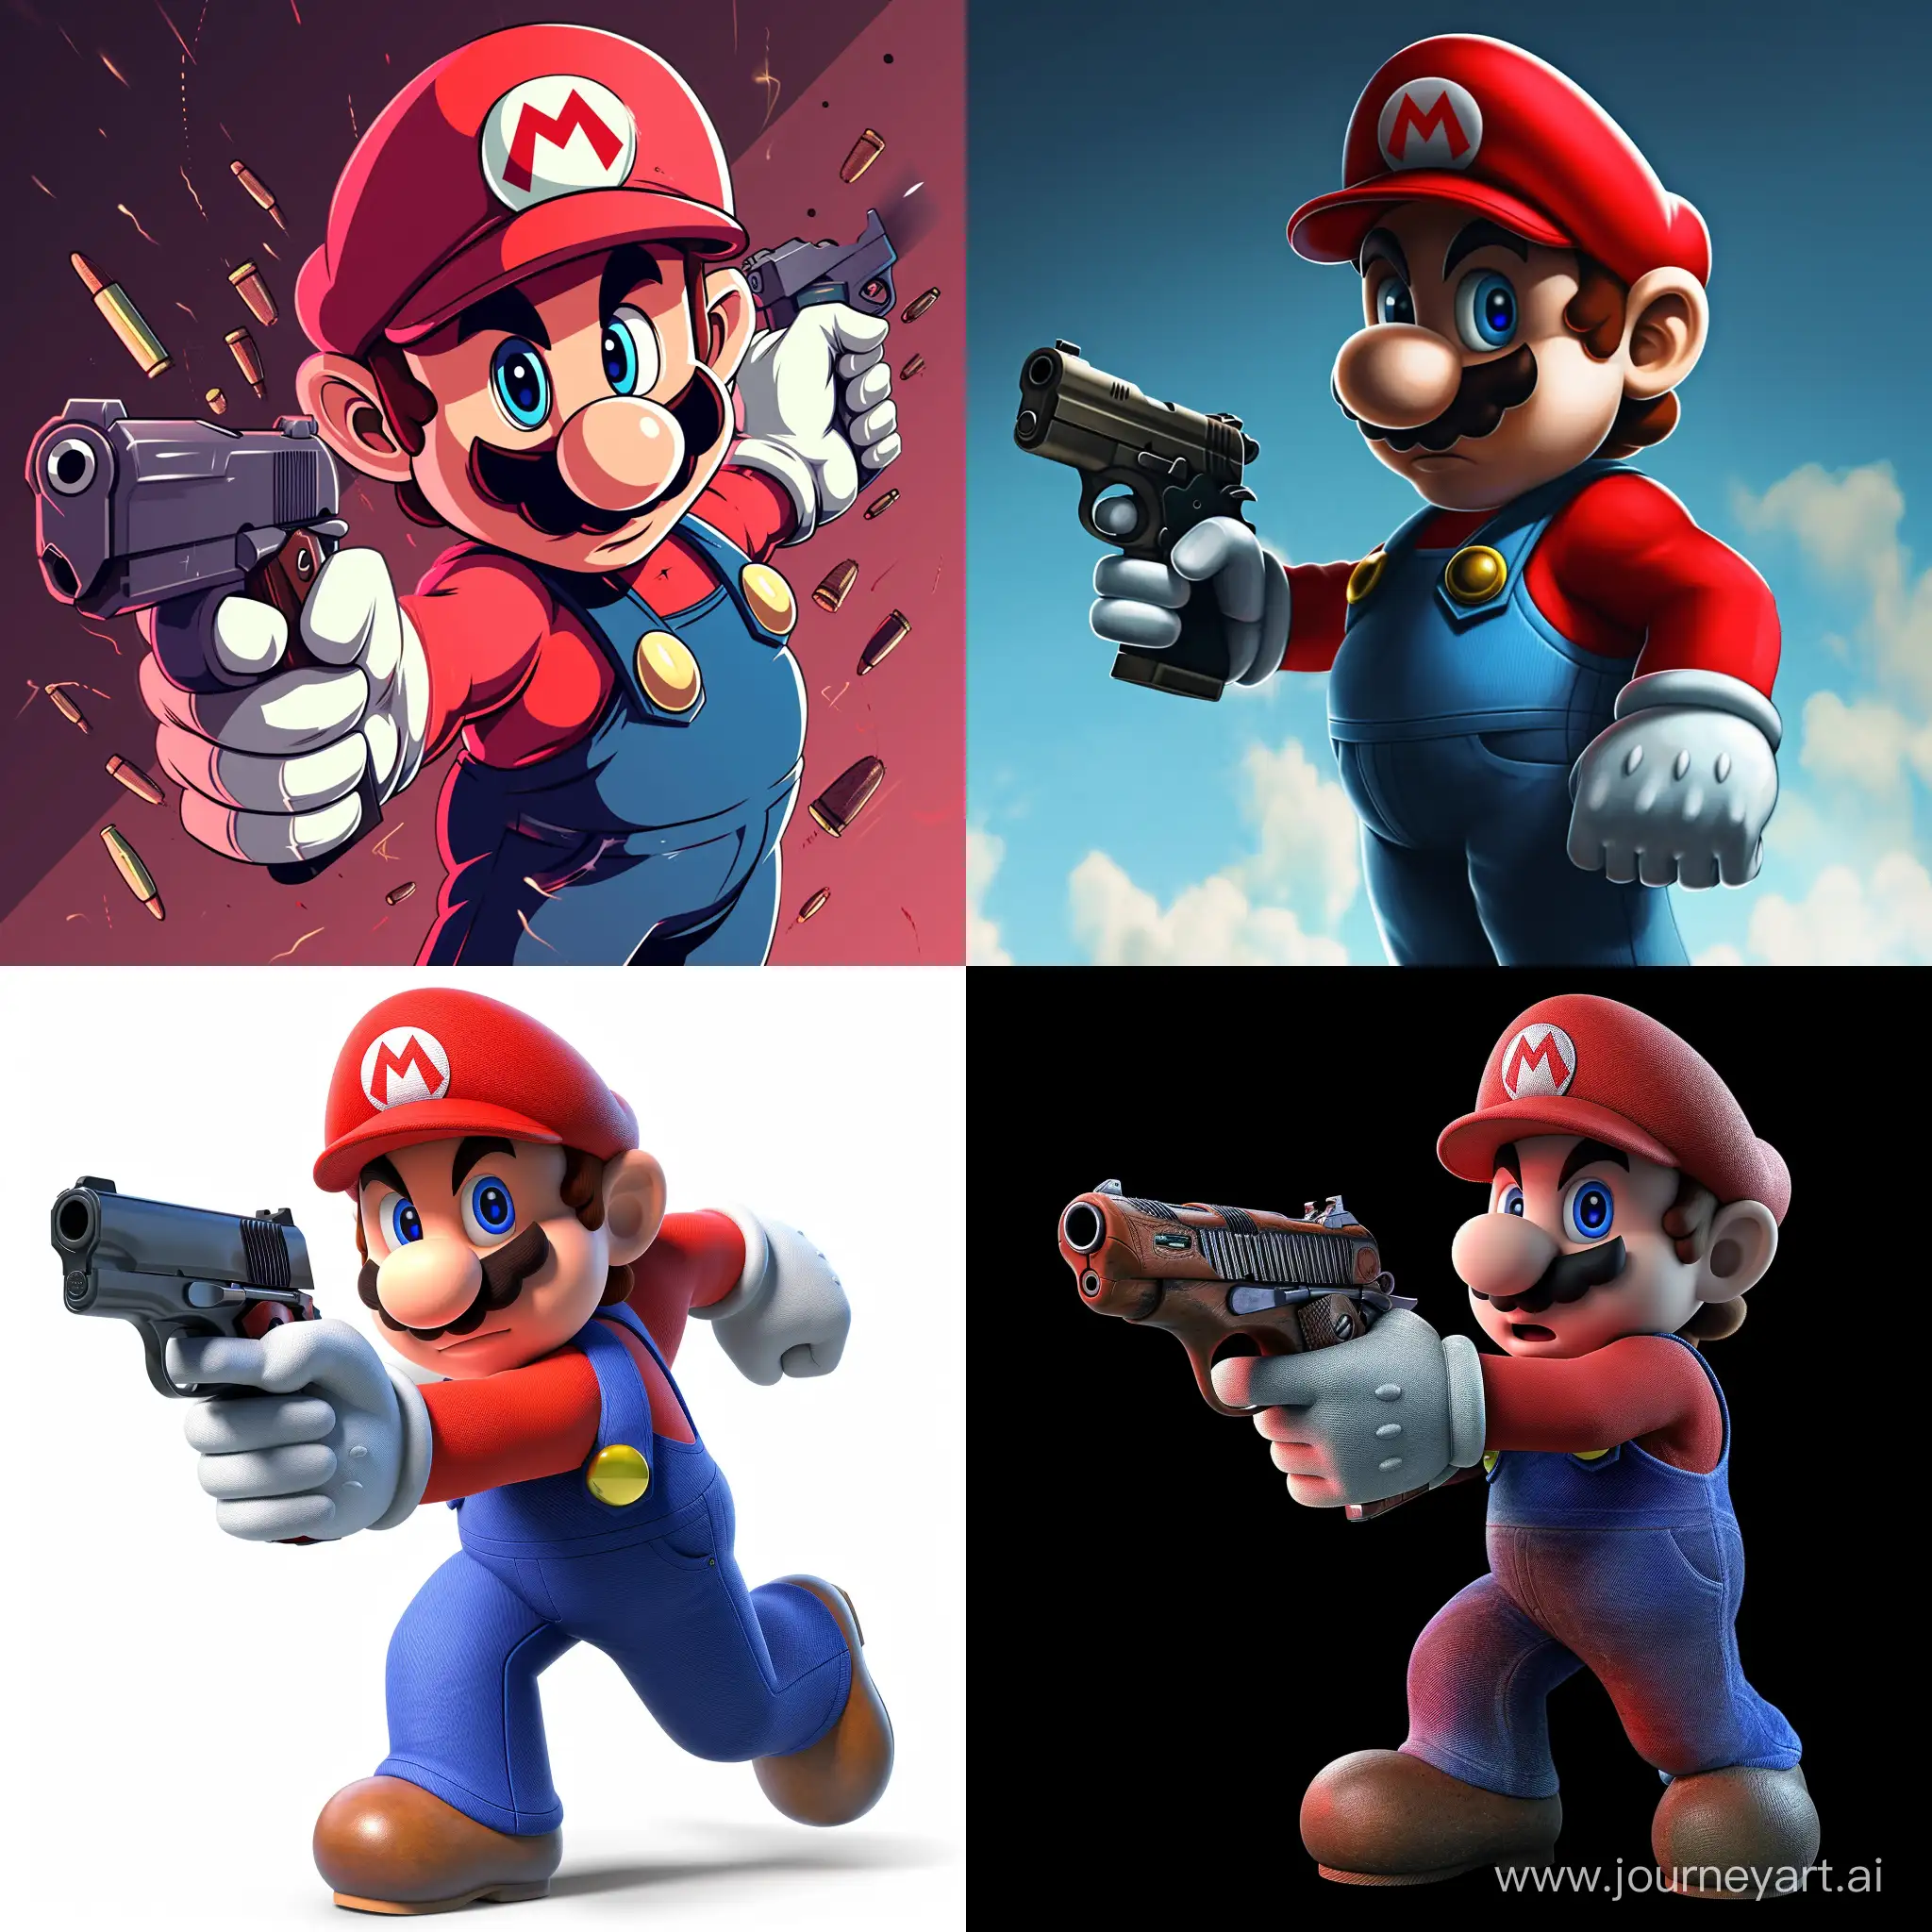 Mario with a gun